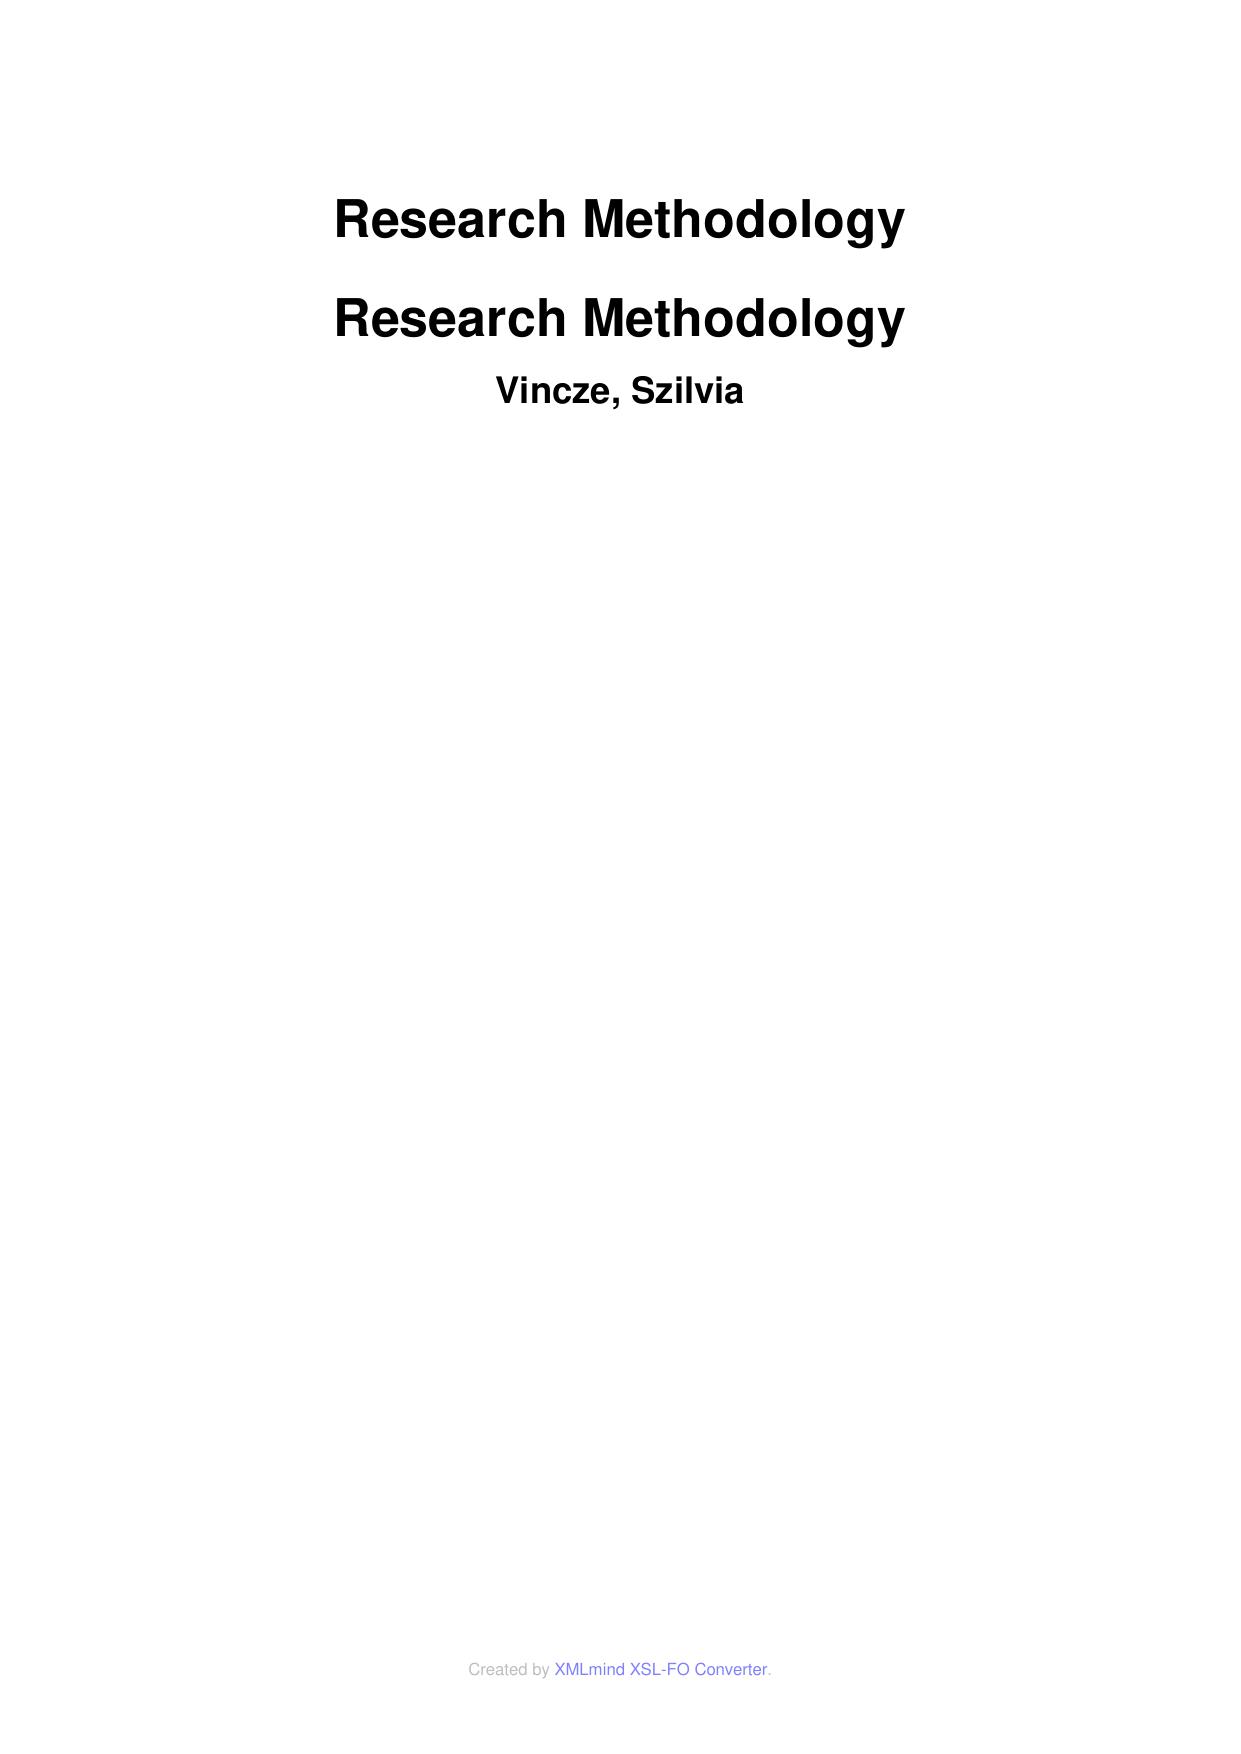 Research Methodology Research Methodology  2015